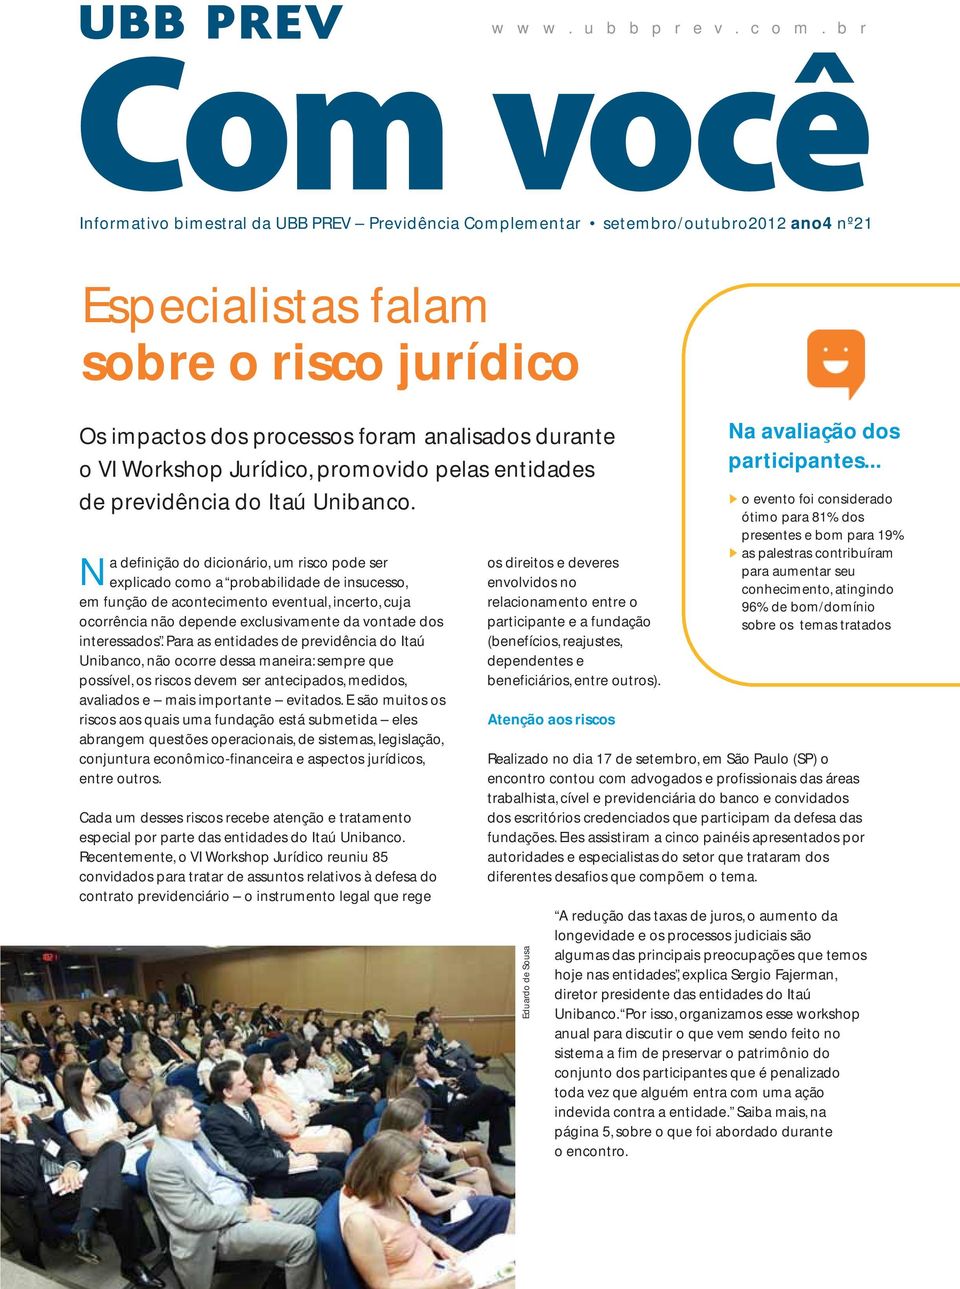 Workshop Jurídico, promovido pelas entidades de previdência do Itaú Unibanco.